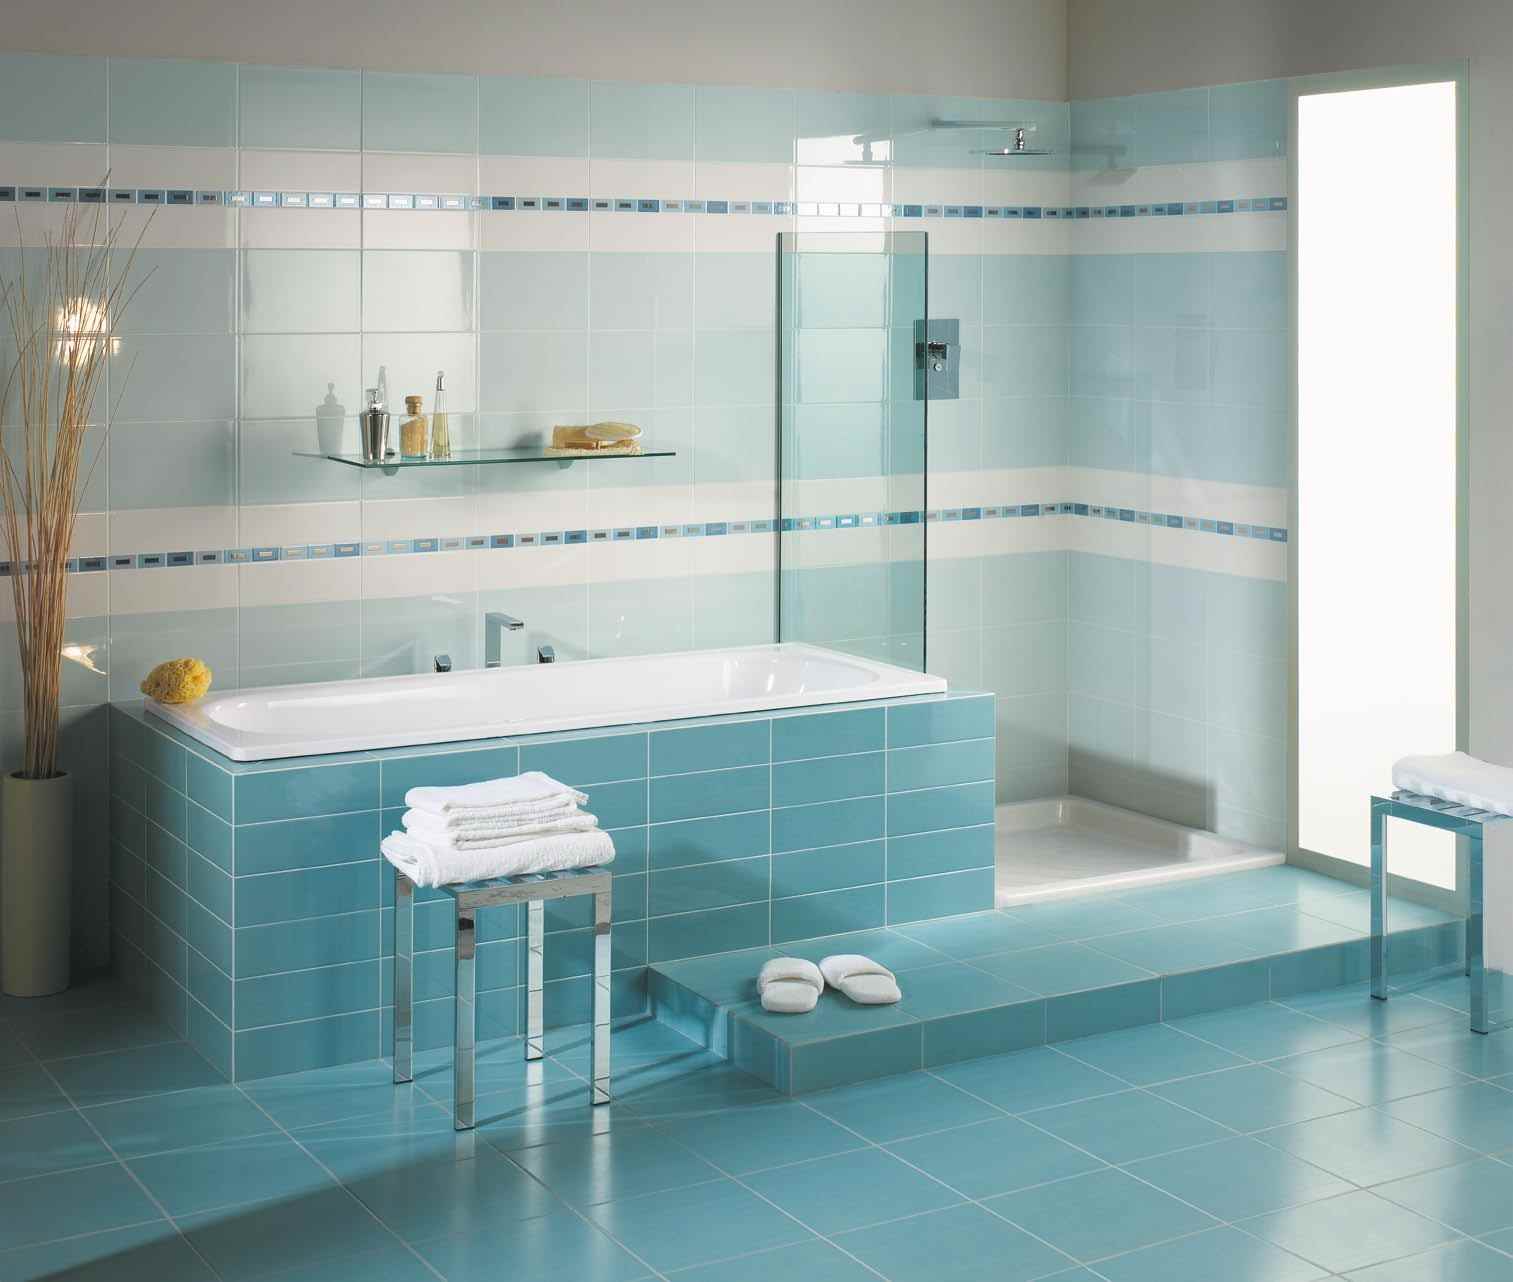 optie van ongebruikelijke inrichting voor het leggen van tegels in de badkamer